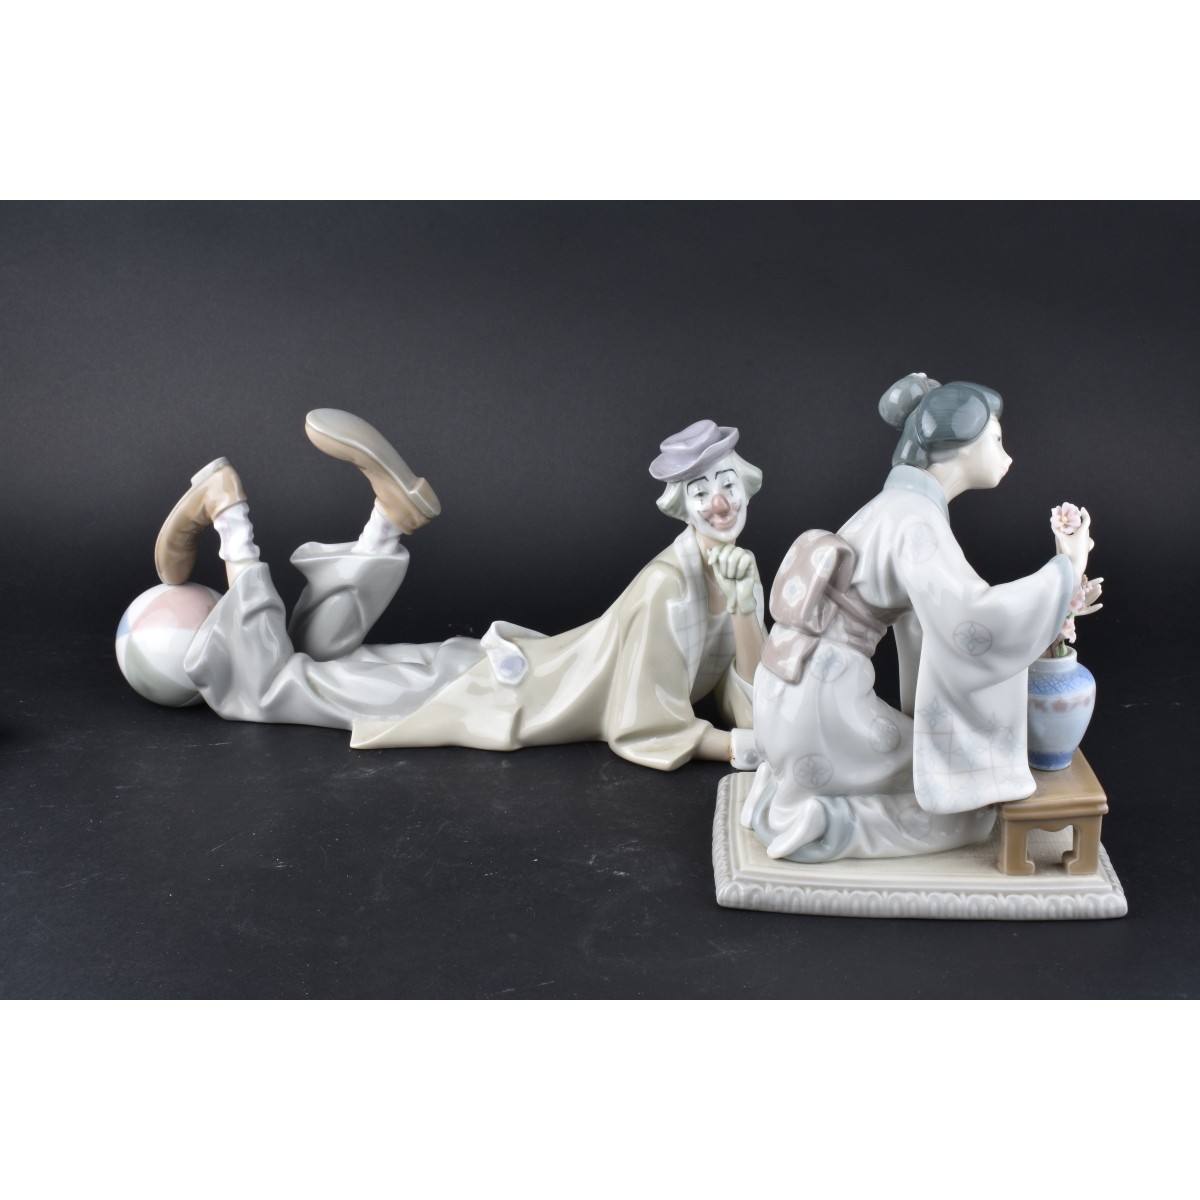 2 Lladro Figurines